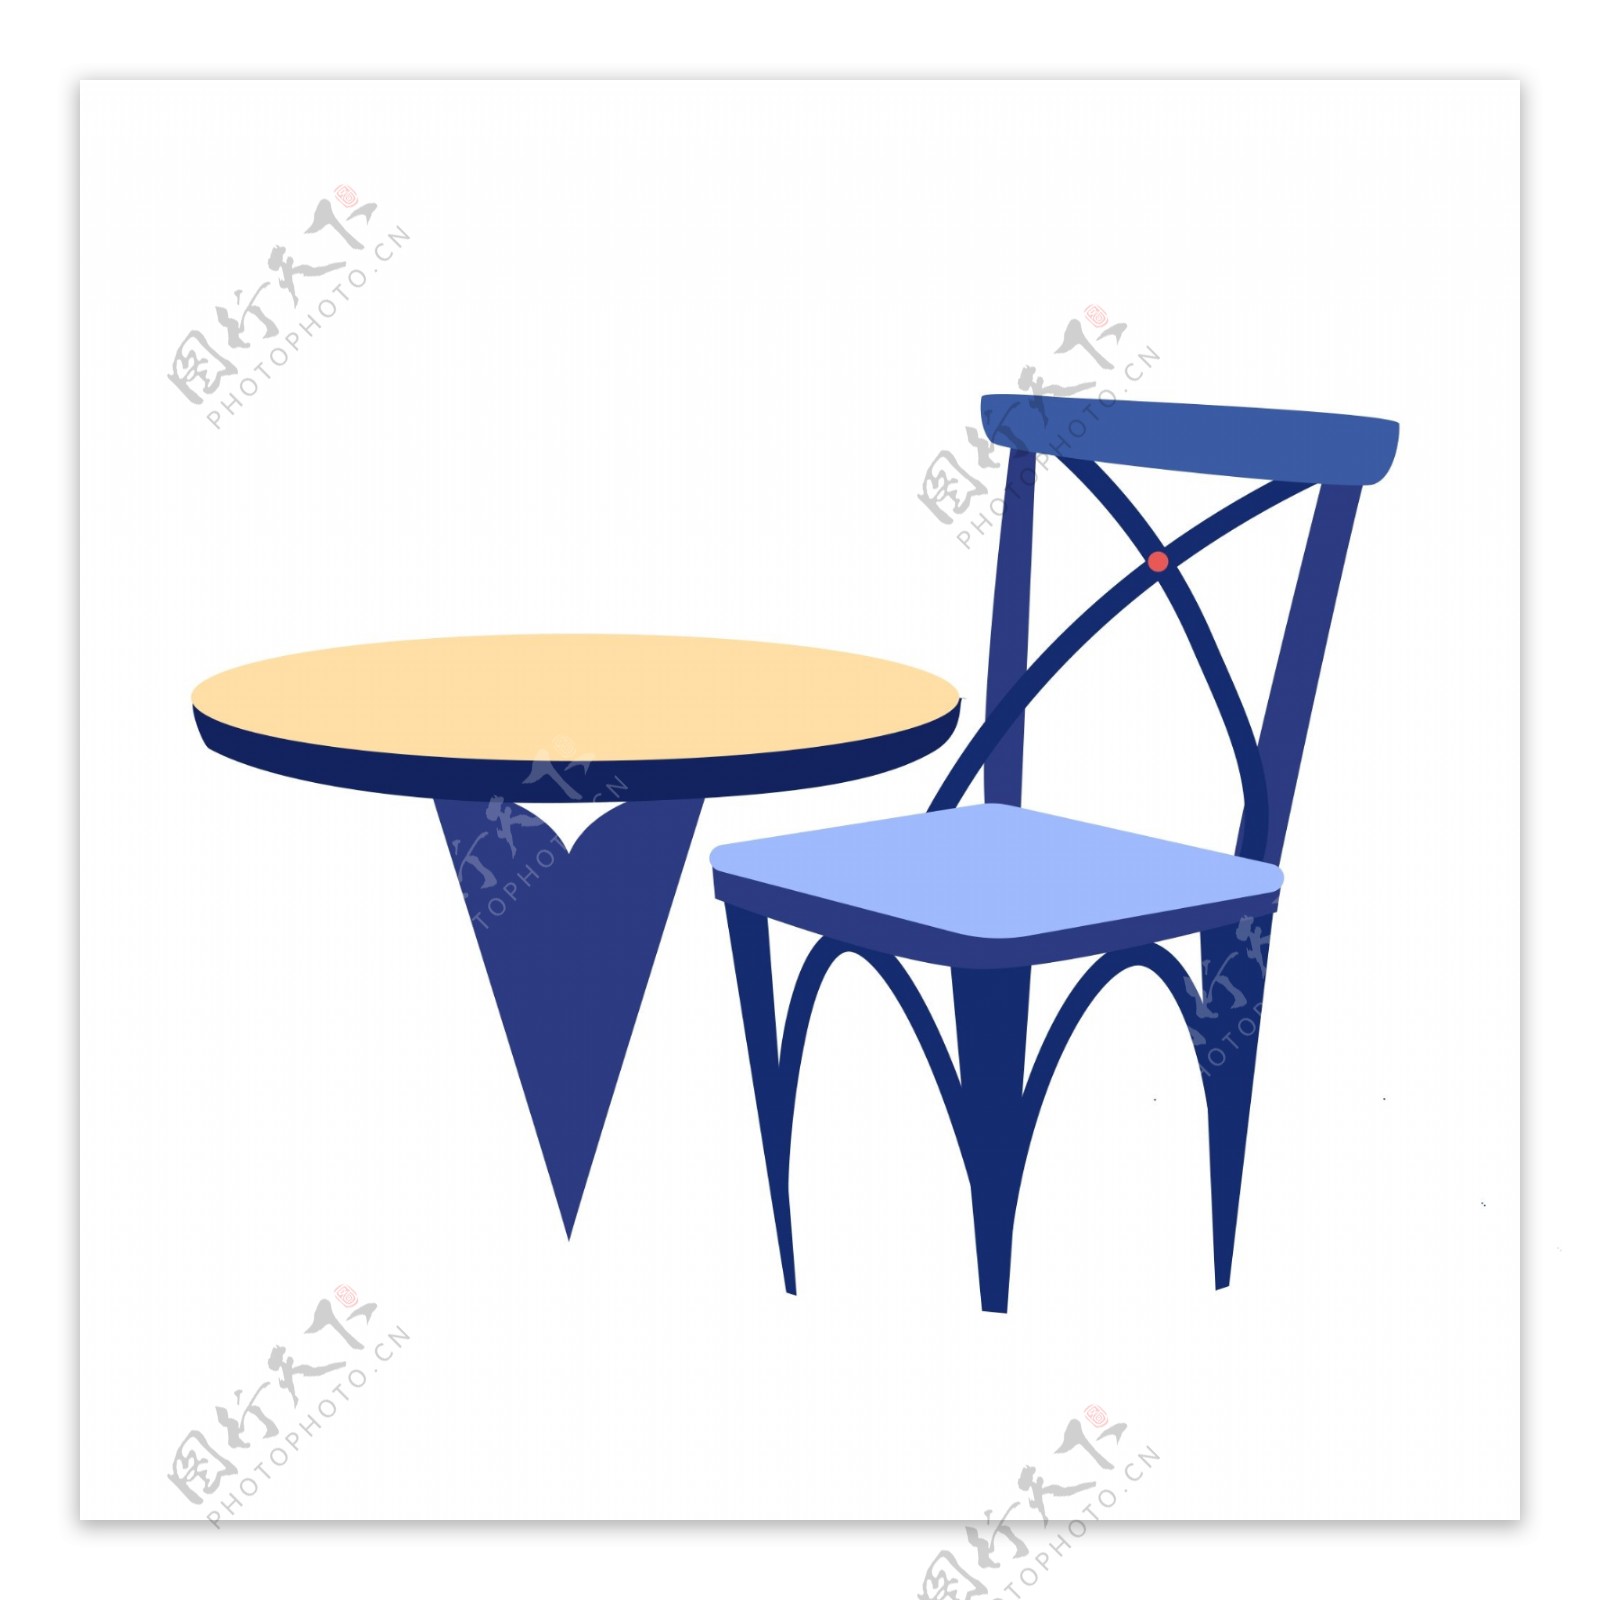 卡通桌子和凳子设计可商用元素